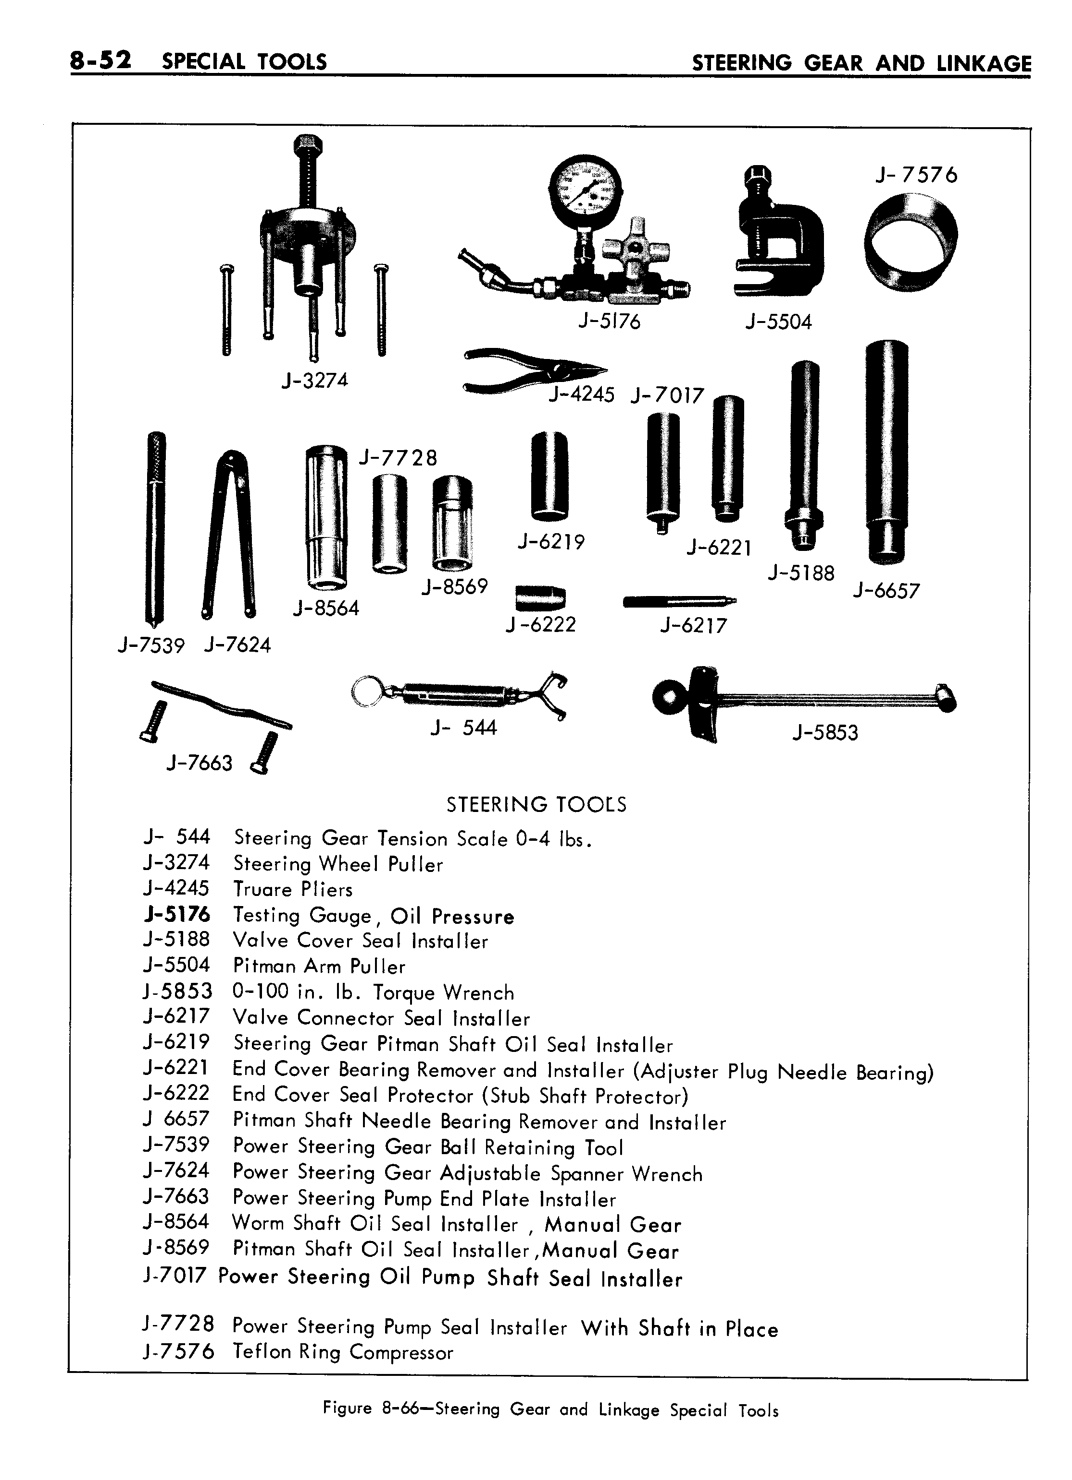 n_08 1961 Buick Shop Manual - Steering-052-052.jpg